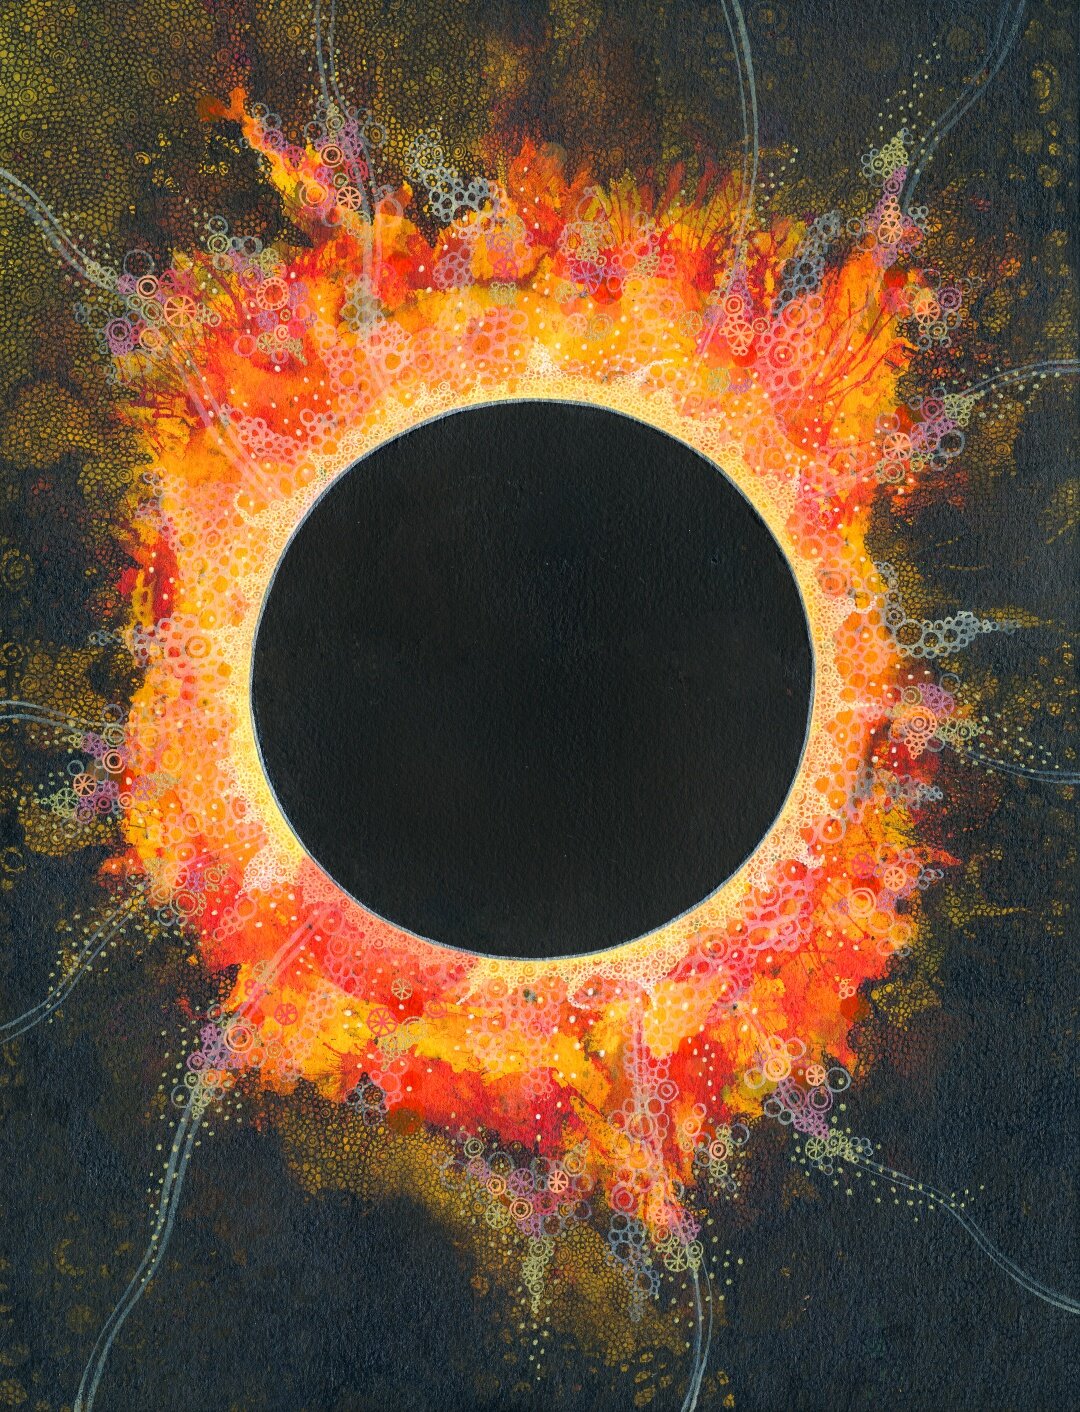 Eclipse, 2015.